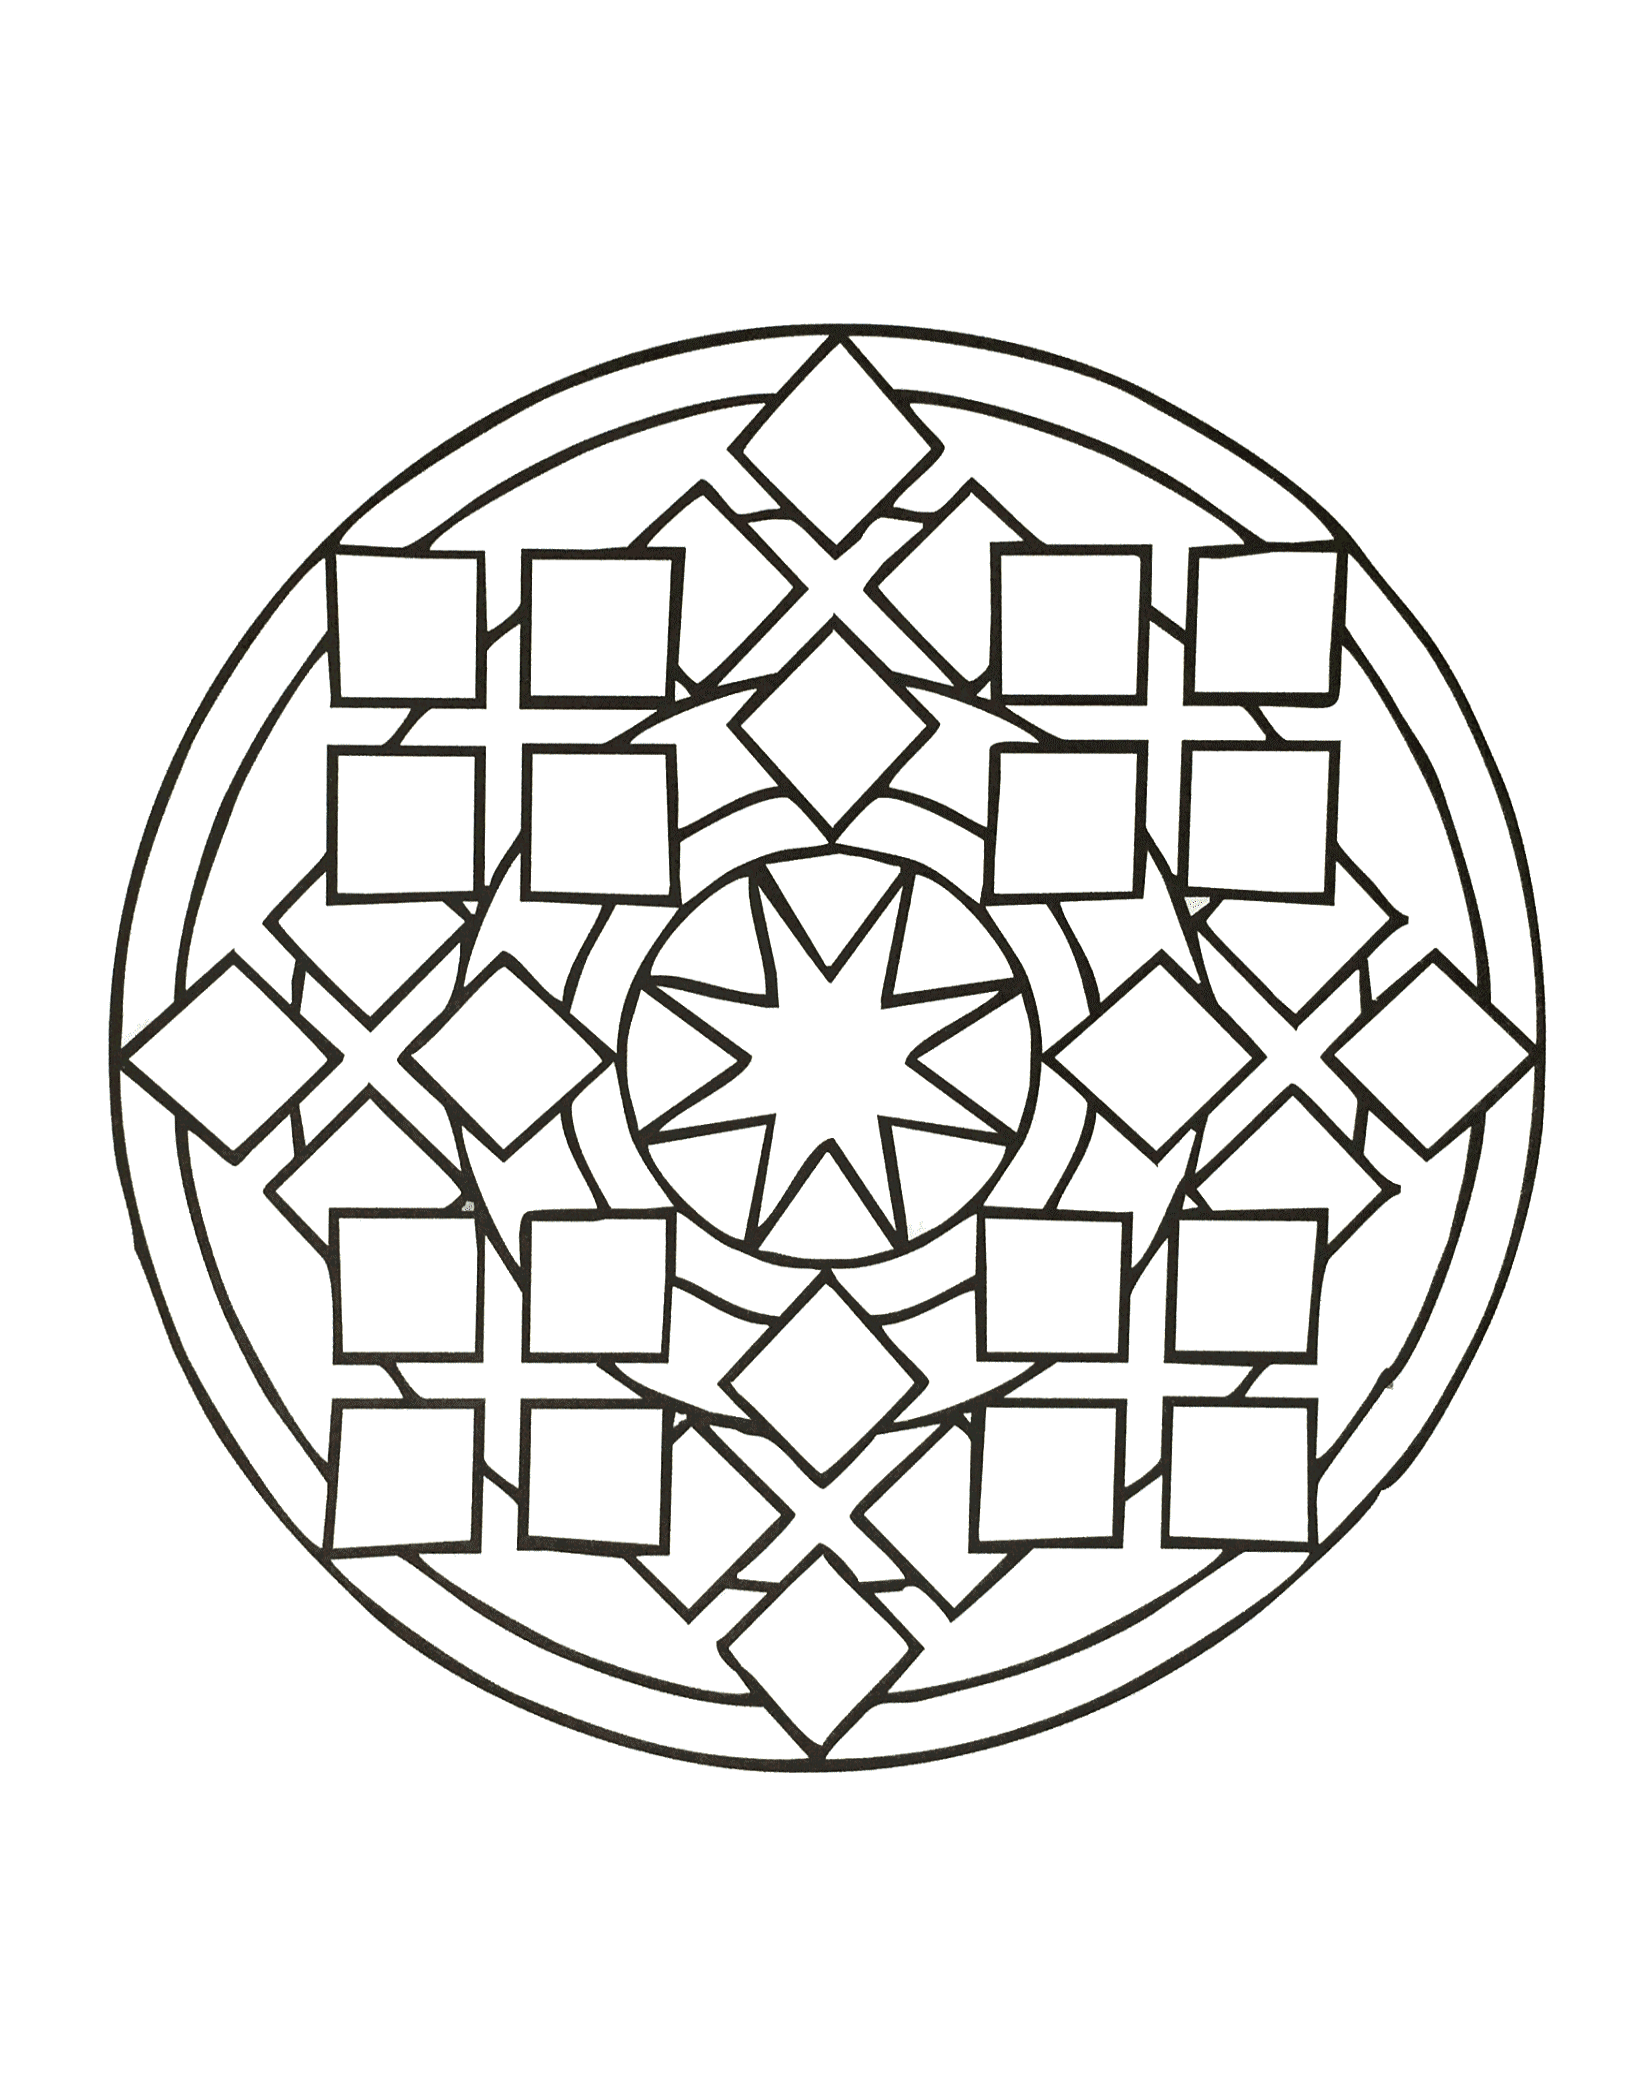 Rilassatevi per qualche minuto con questo superbo Mandala composto da forme altamente simmetriche, geometriche e armoniose.